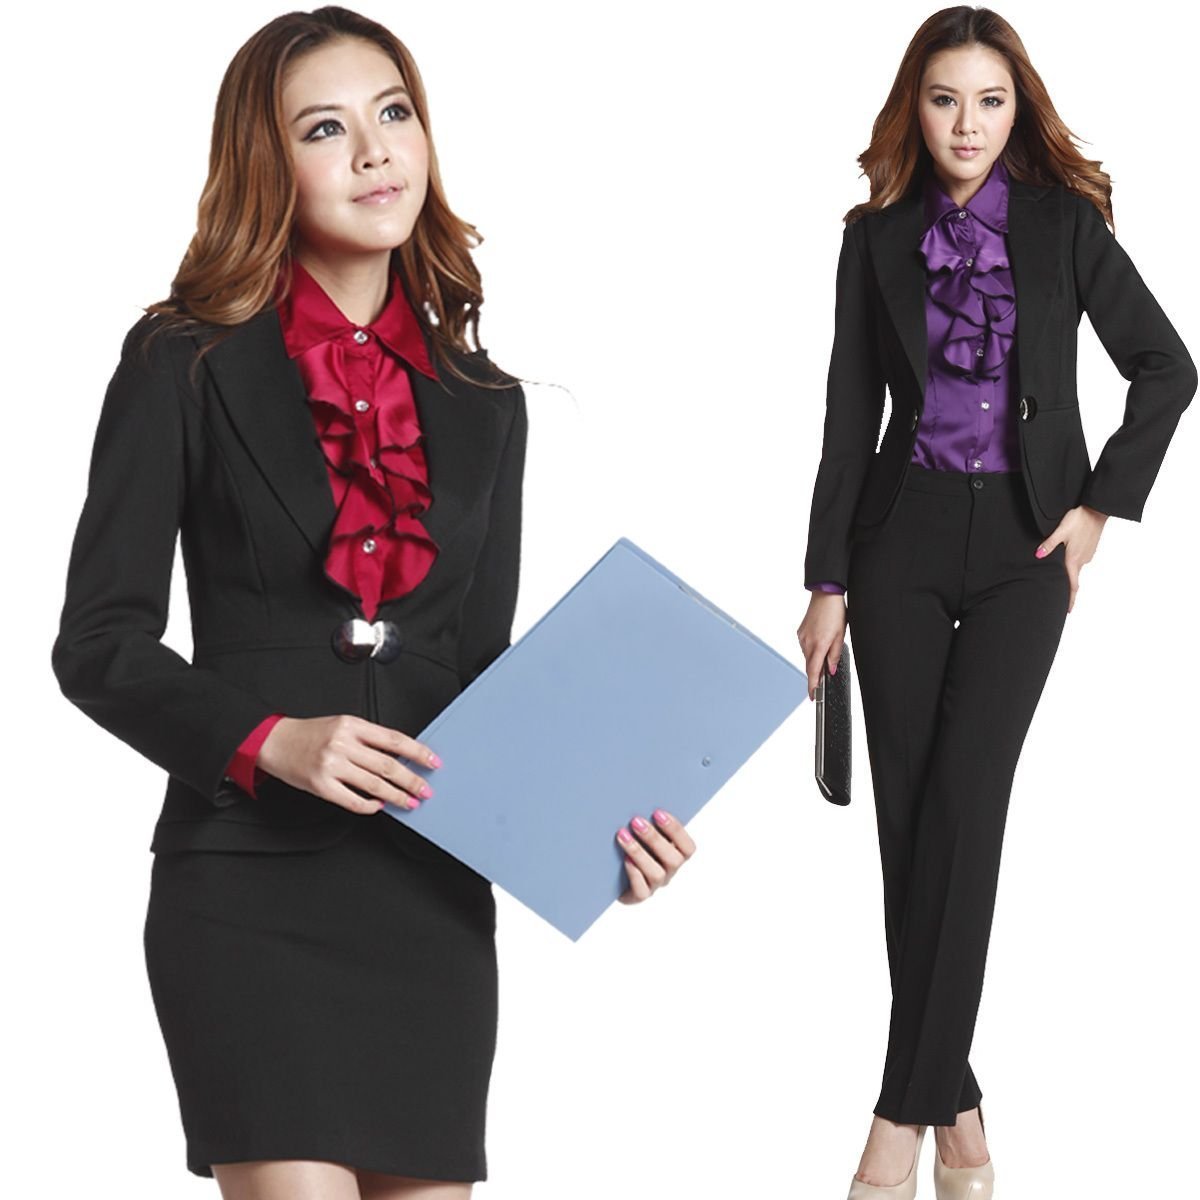 Официально деловой стиль для женщин. Одежда секретаря. Офисная одежда для женщин. Деловой стиль одежды. Деловая форма одежды.